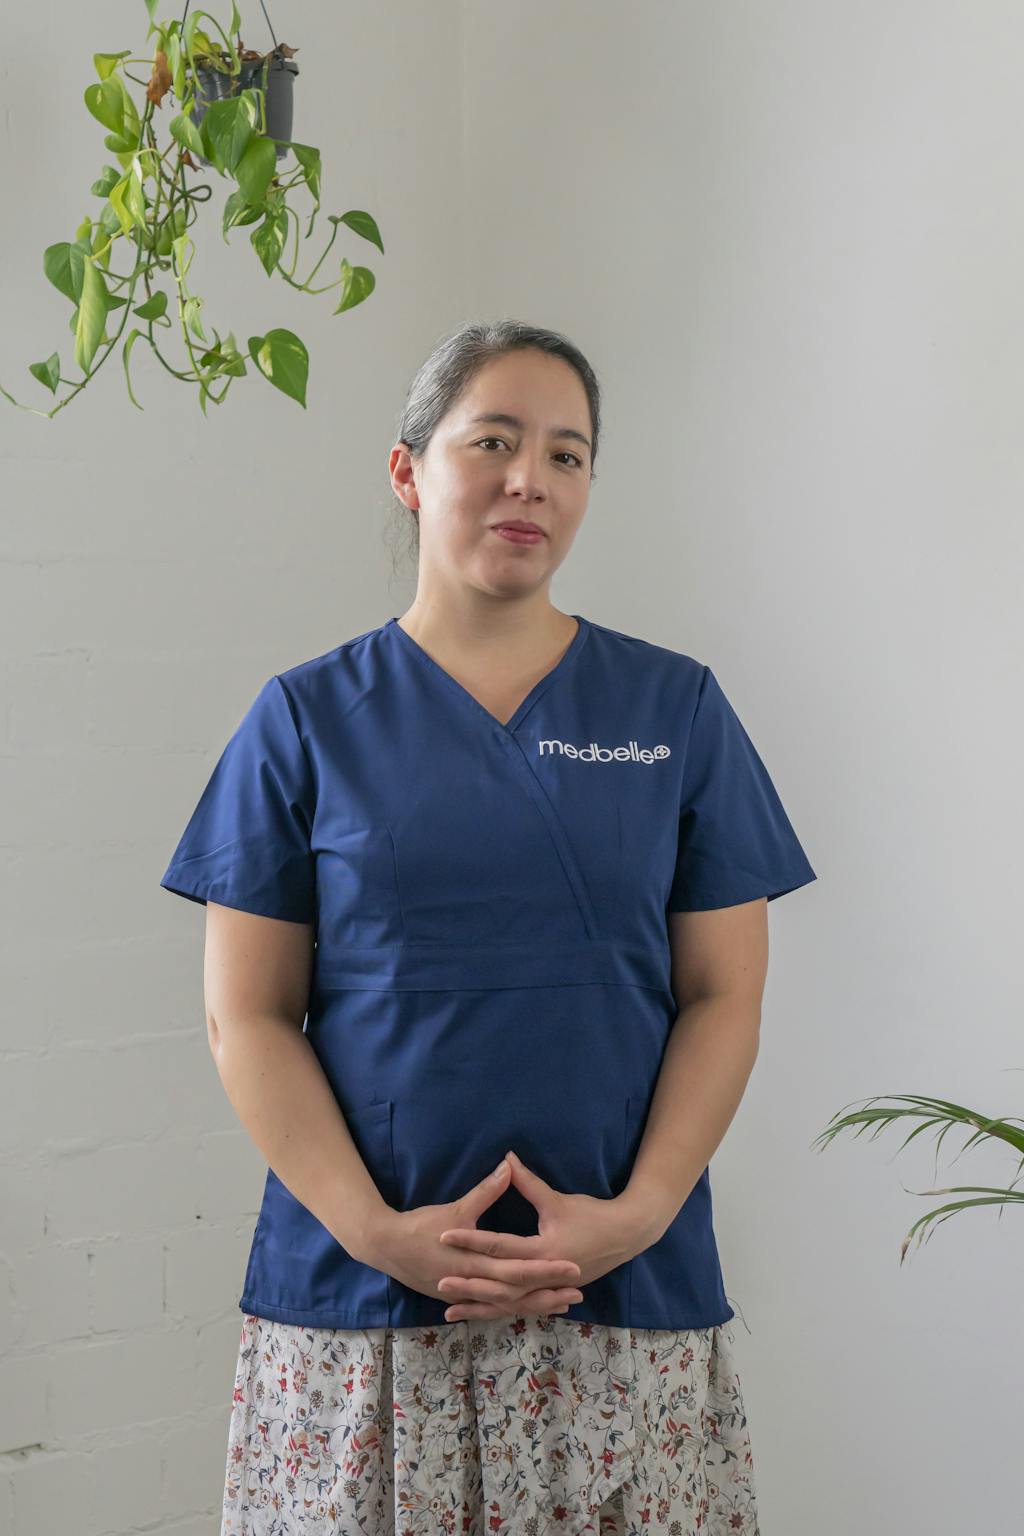 Lourdes | Patient Care Adviser